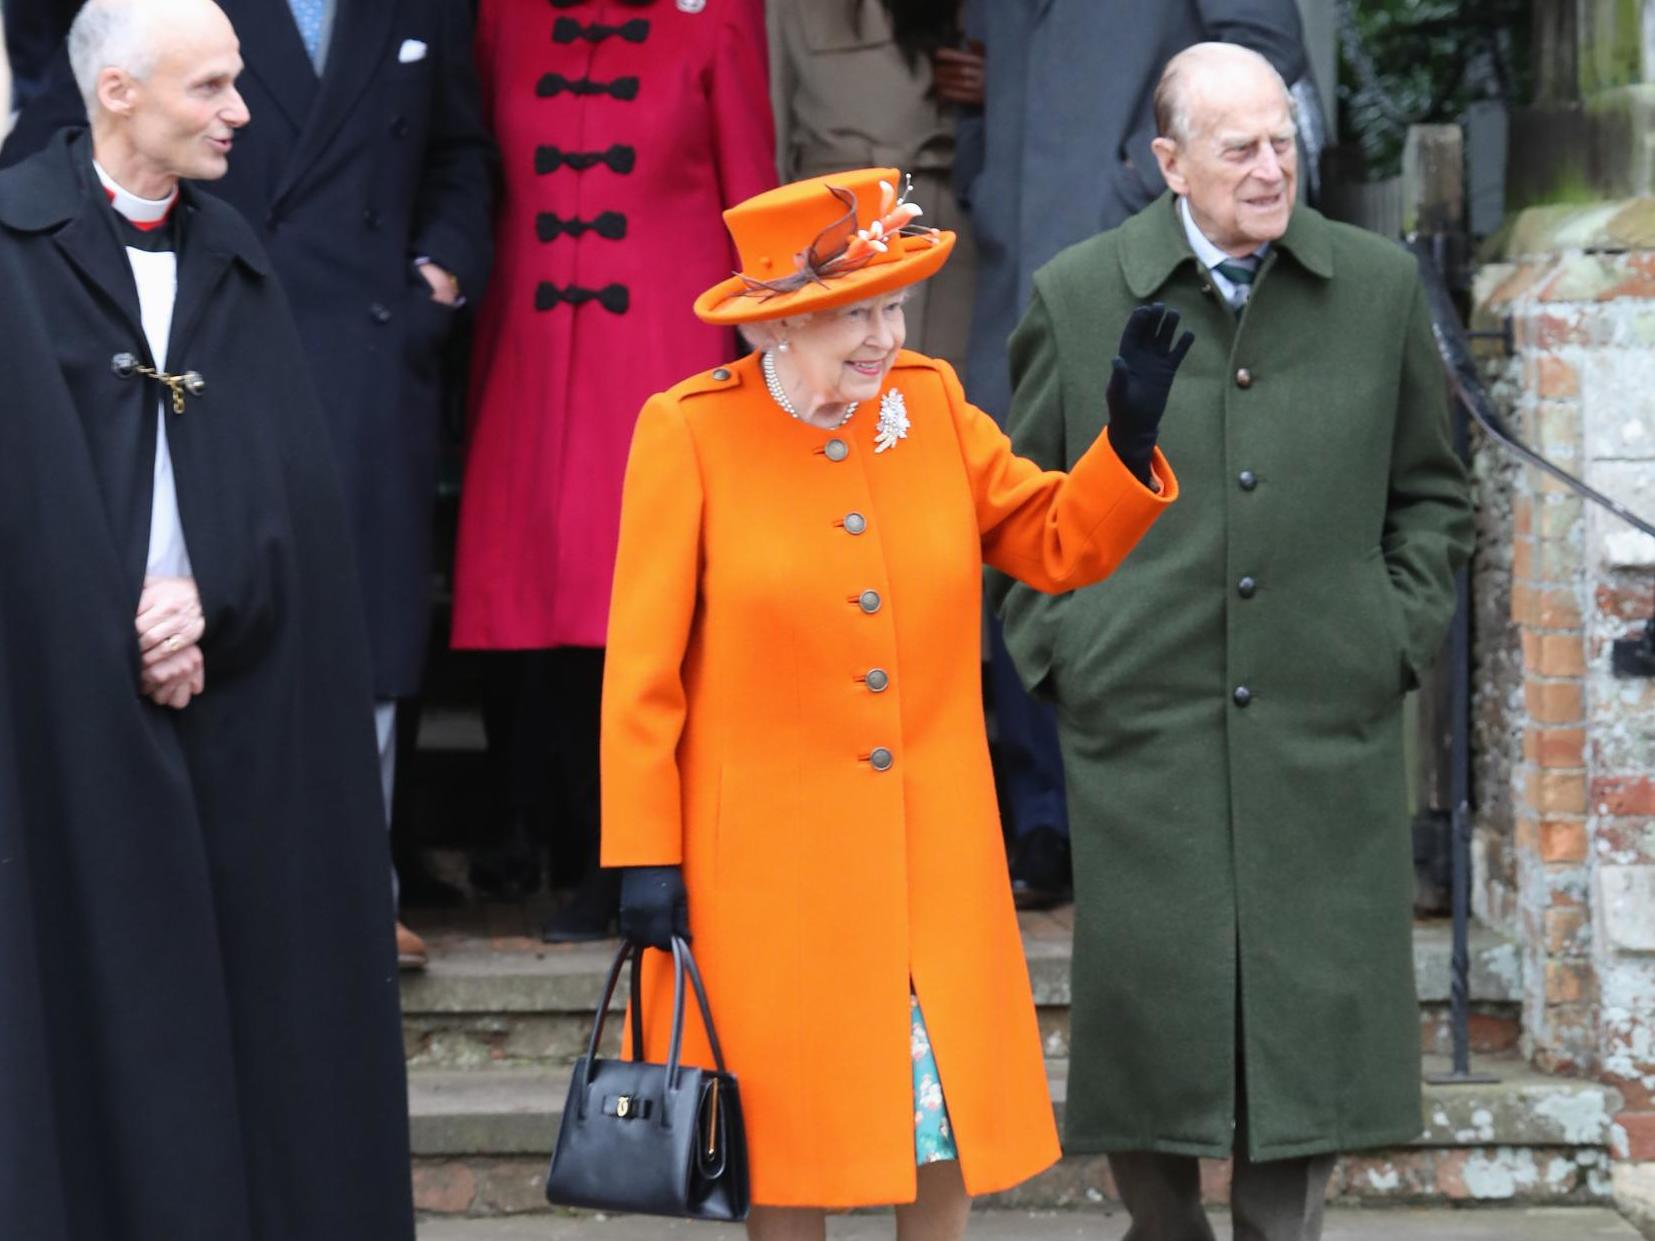 Prince Philip must always walk behind the Queen.